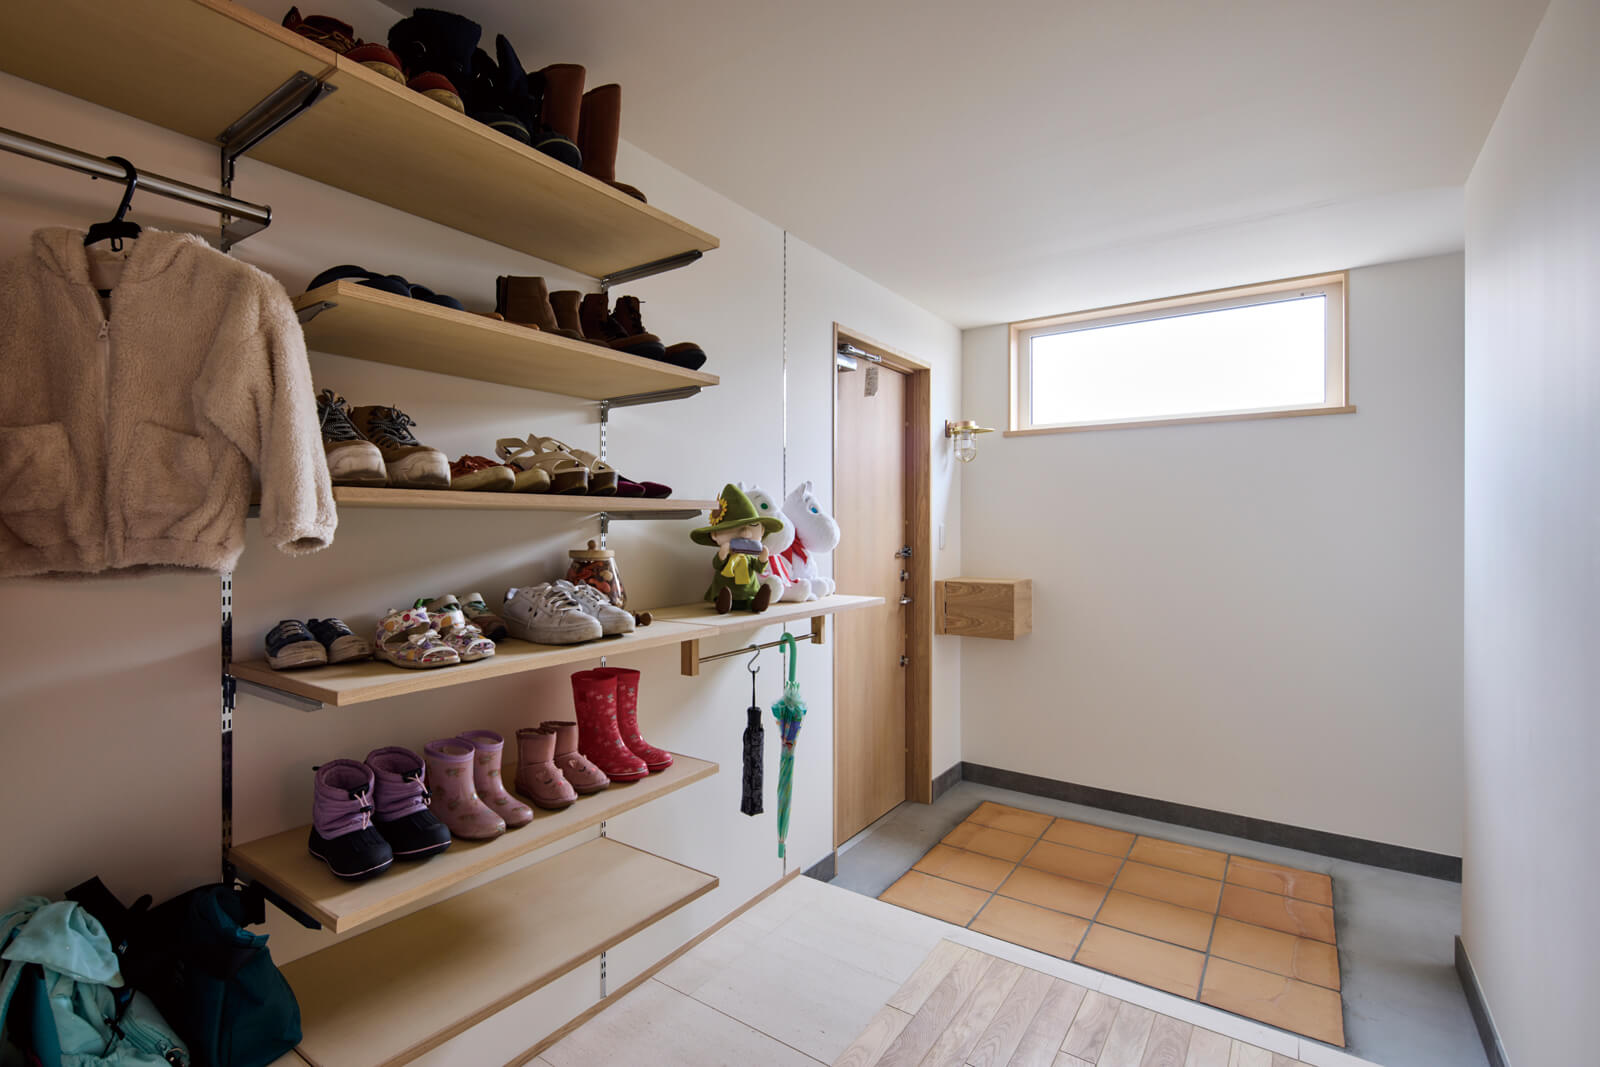 アウターや靴、傘など、出かける際の身支度をすべて整えられる広い玄関ホール。オープンな造作収納側の床は石を敷いて、汚れを拭き取りやすいように配慮している